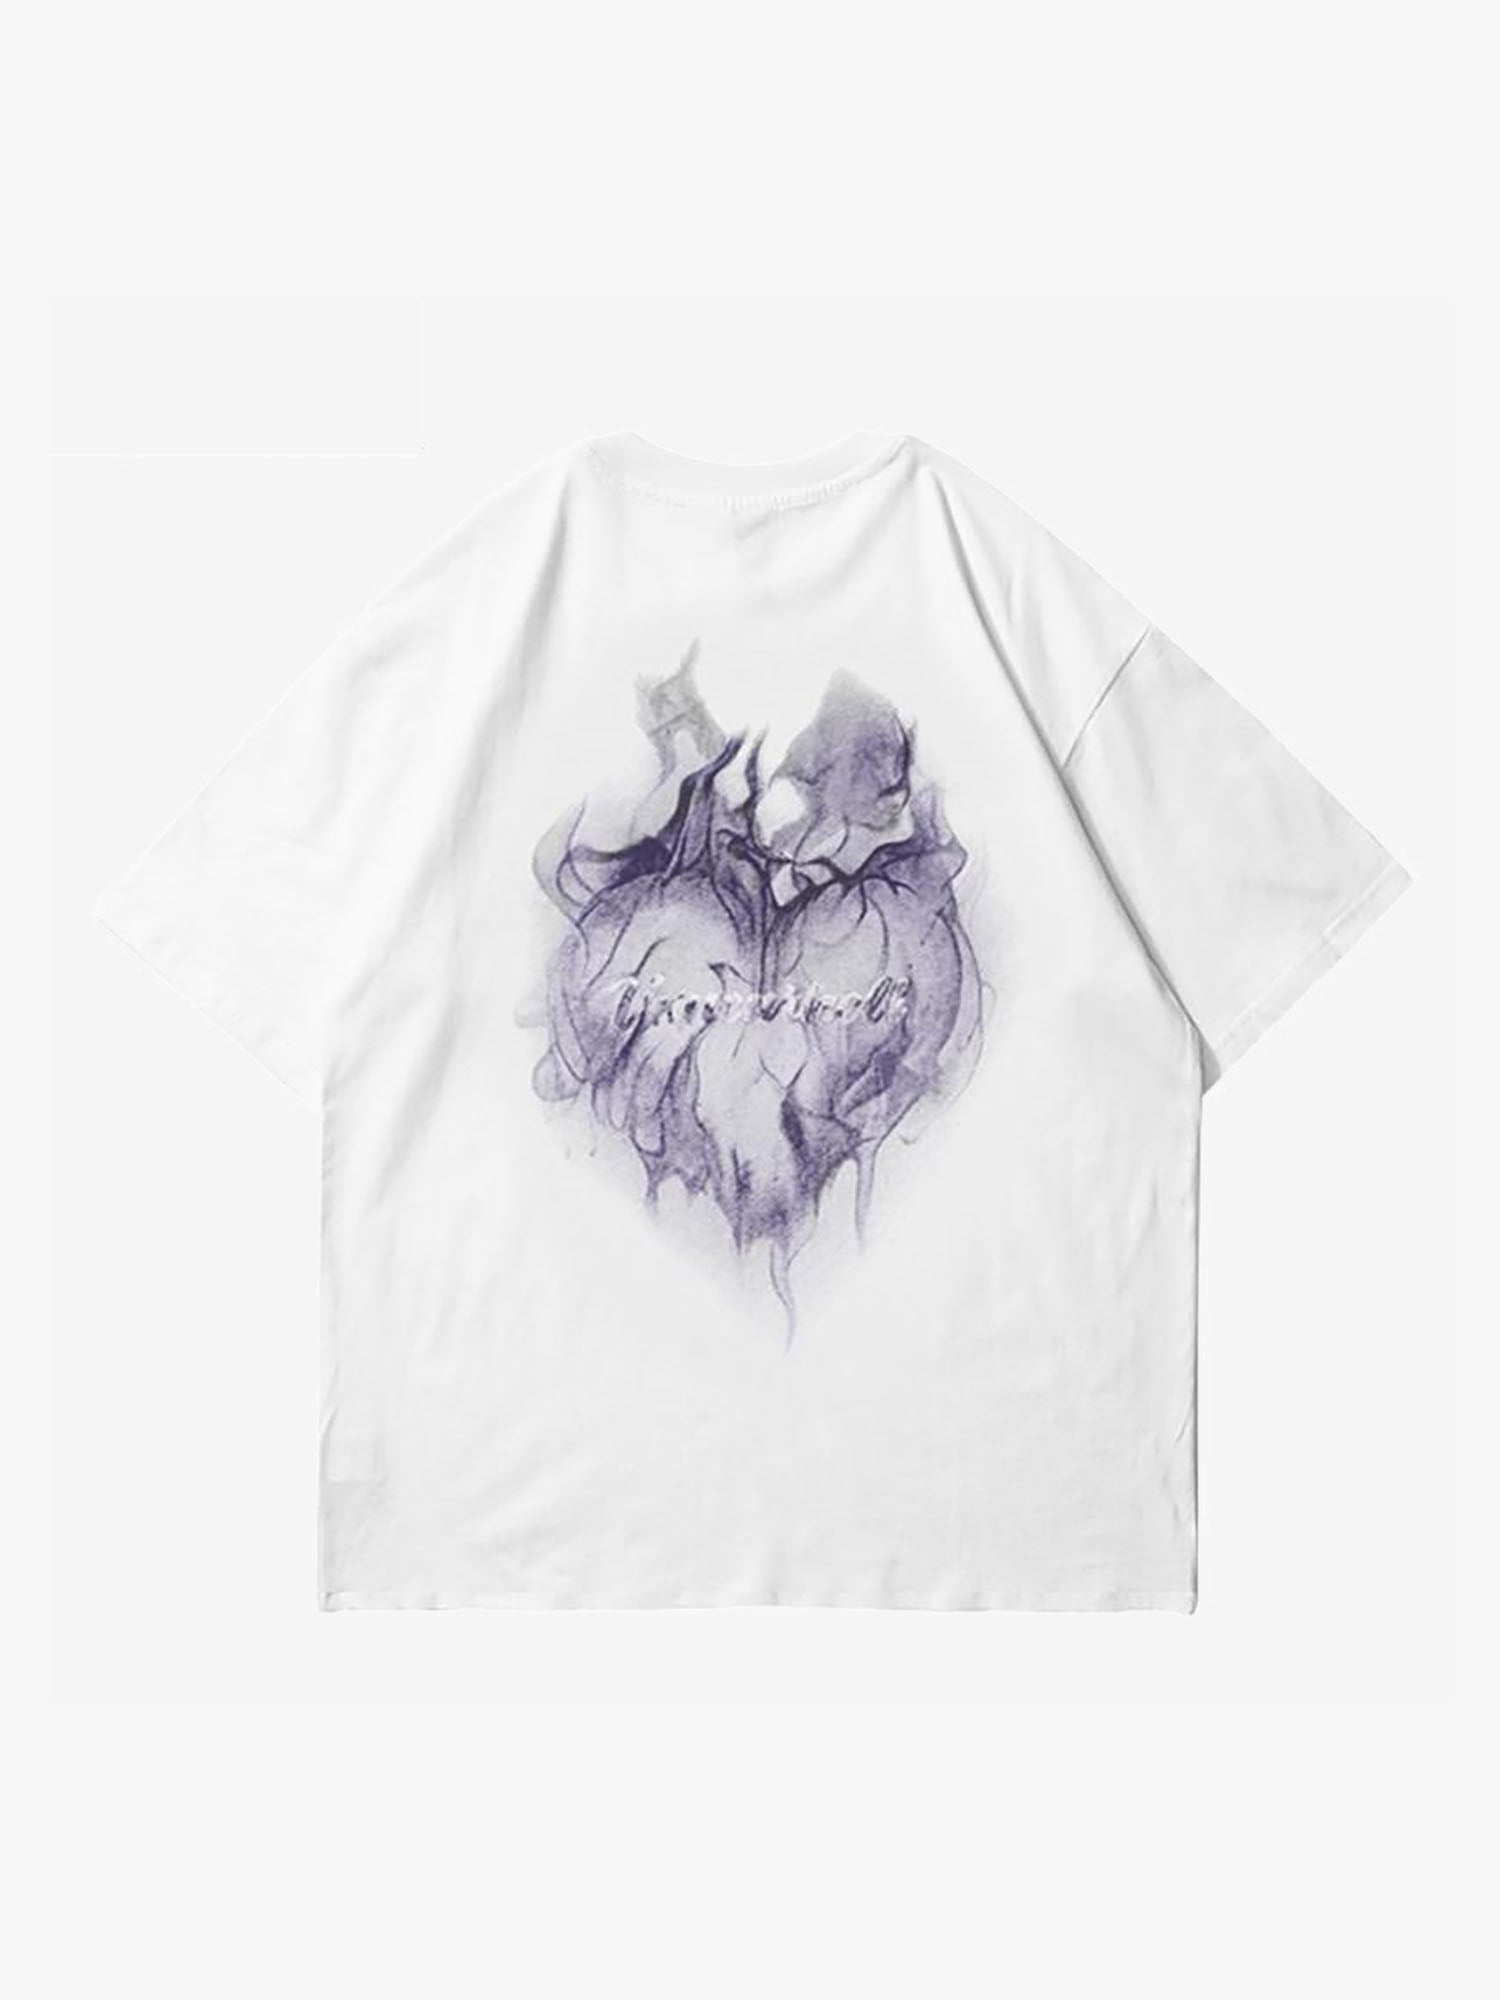 Justnotag T-shirt à manches courtes imprimé flamme en forme de cœur